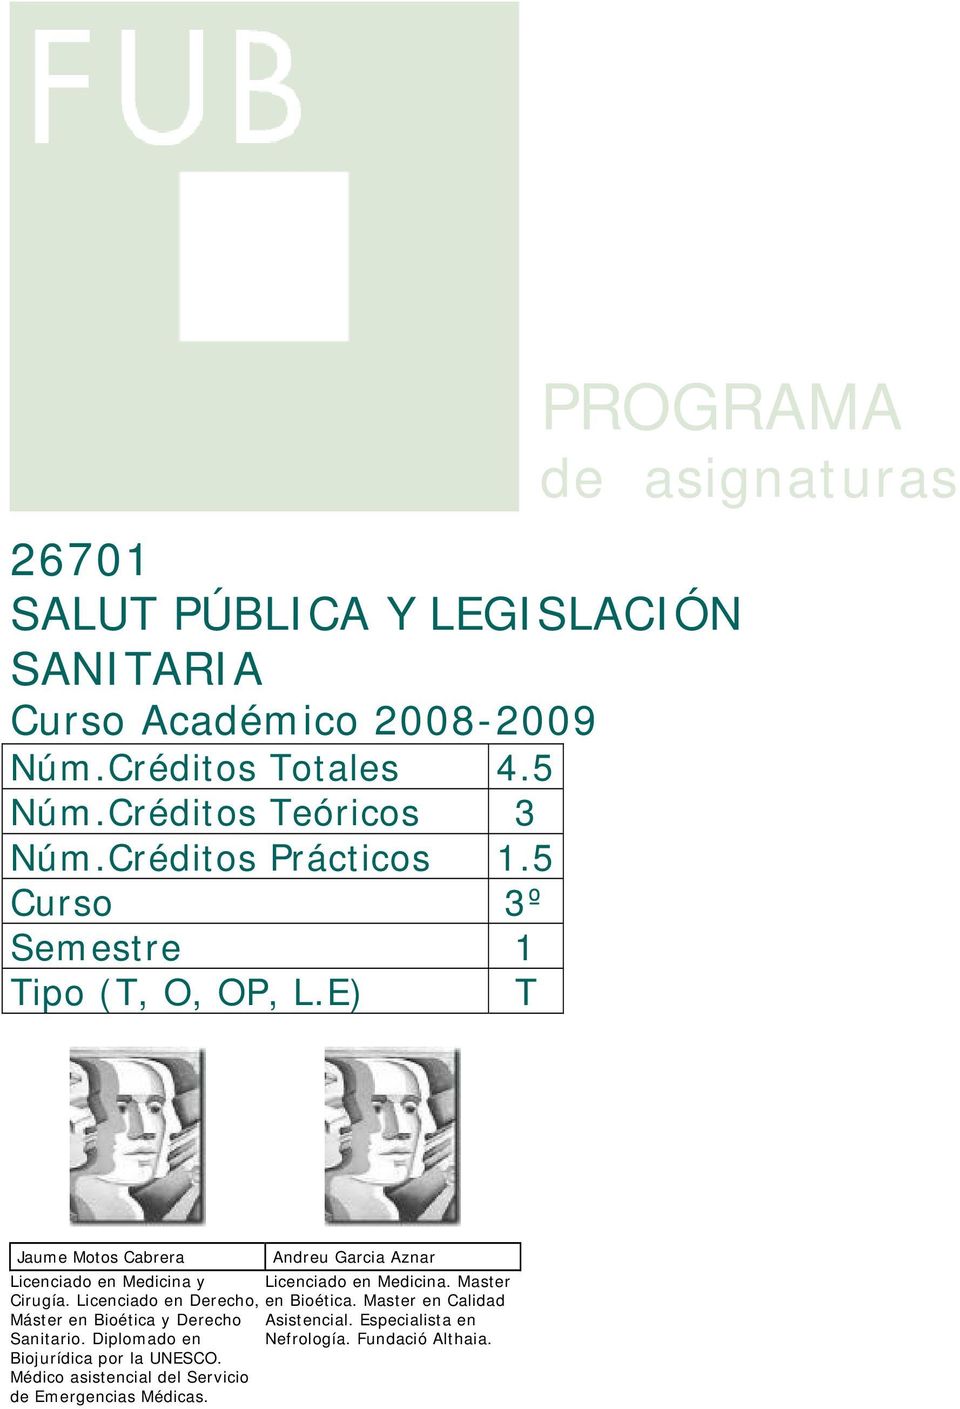 E) T PROGRAMA de asignaturas Jaume Motos Cabrera Andreu Garcia Aznar Licenciado en Medicina y Licenciado en Medicina. Master Cirugía.